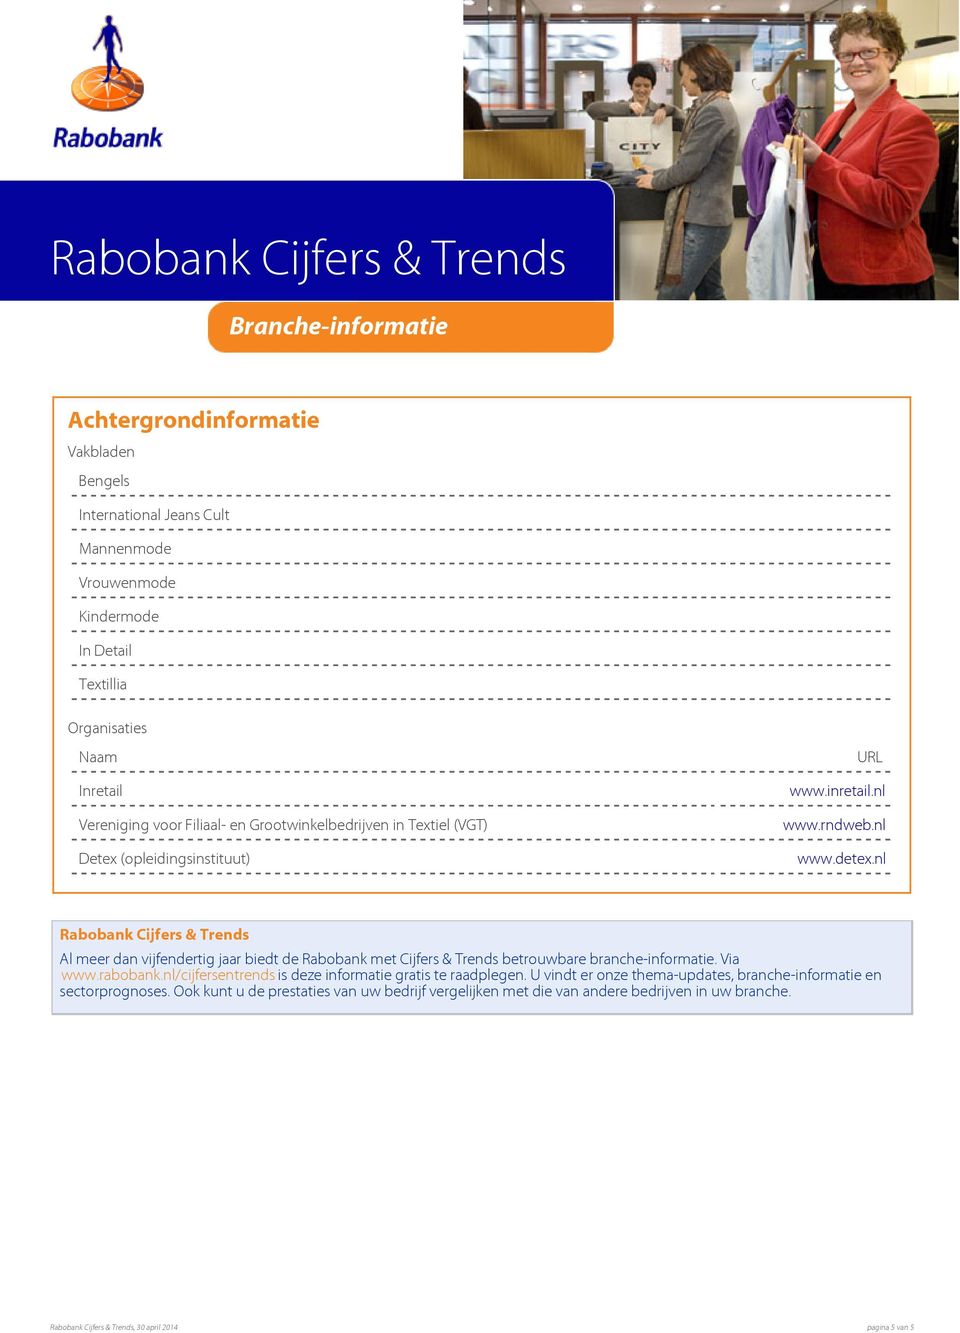 nl Rabobank Cijfers & Trends Al meer dan vijfendertig jaar biedt de Rabobank met Cijfers & Trends betrouwbare branche-informatie. Via www.rabobank.